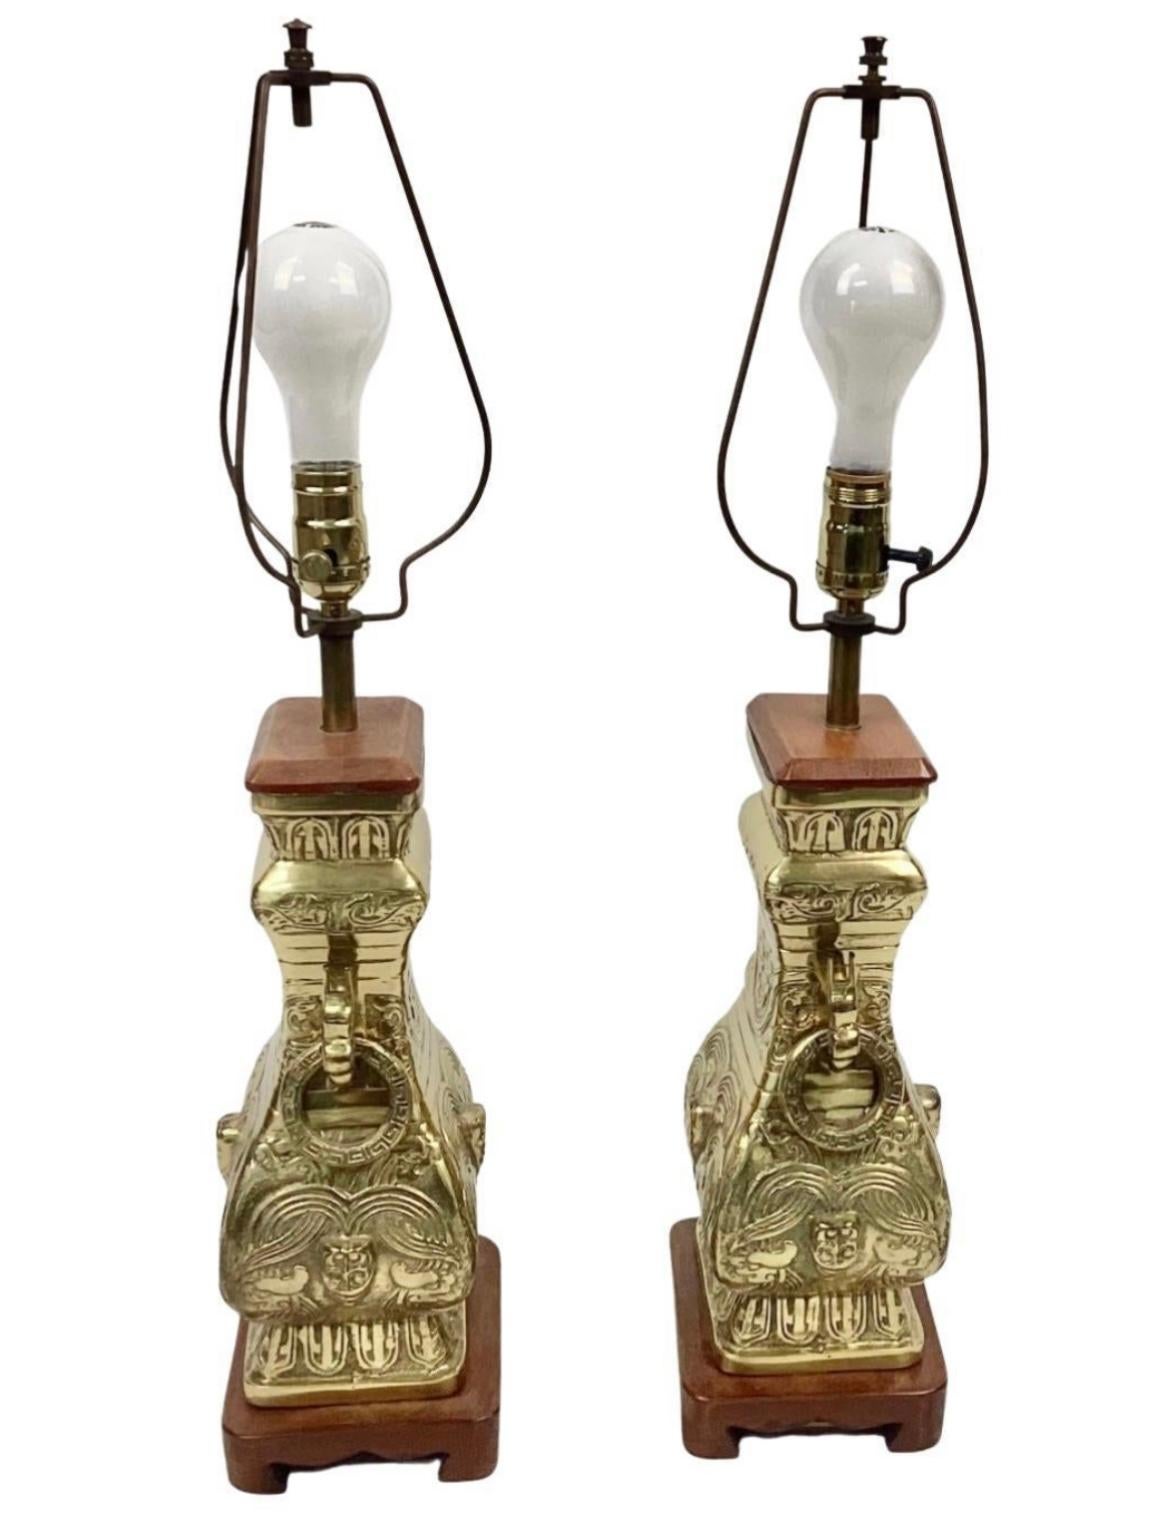 Paire d'impressionnantes lampes de table en laiton de style chinoiserie du 20e siècle, dans le style de James Mont. Laiton massif avec une base et un capuchon en bois. Des anneaux en laiton ornés sont suspendus de chaque côté des lampes.

Dimensions